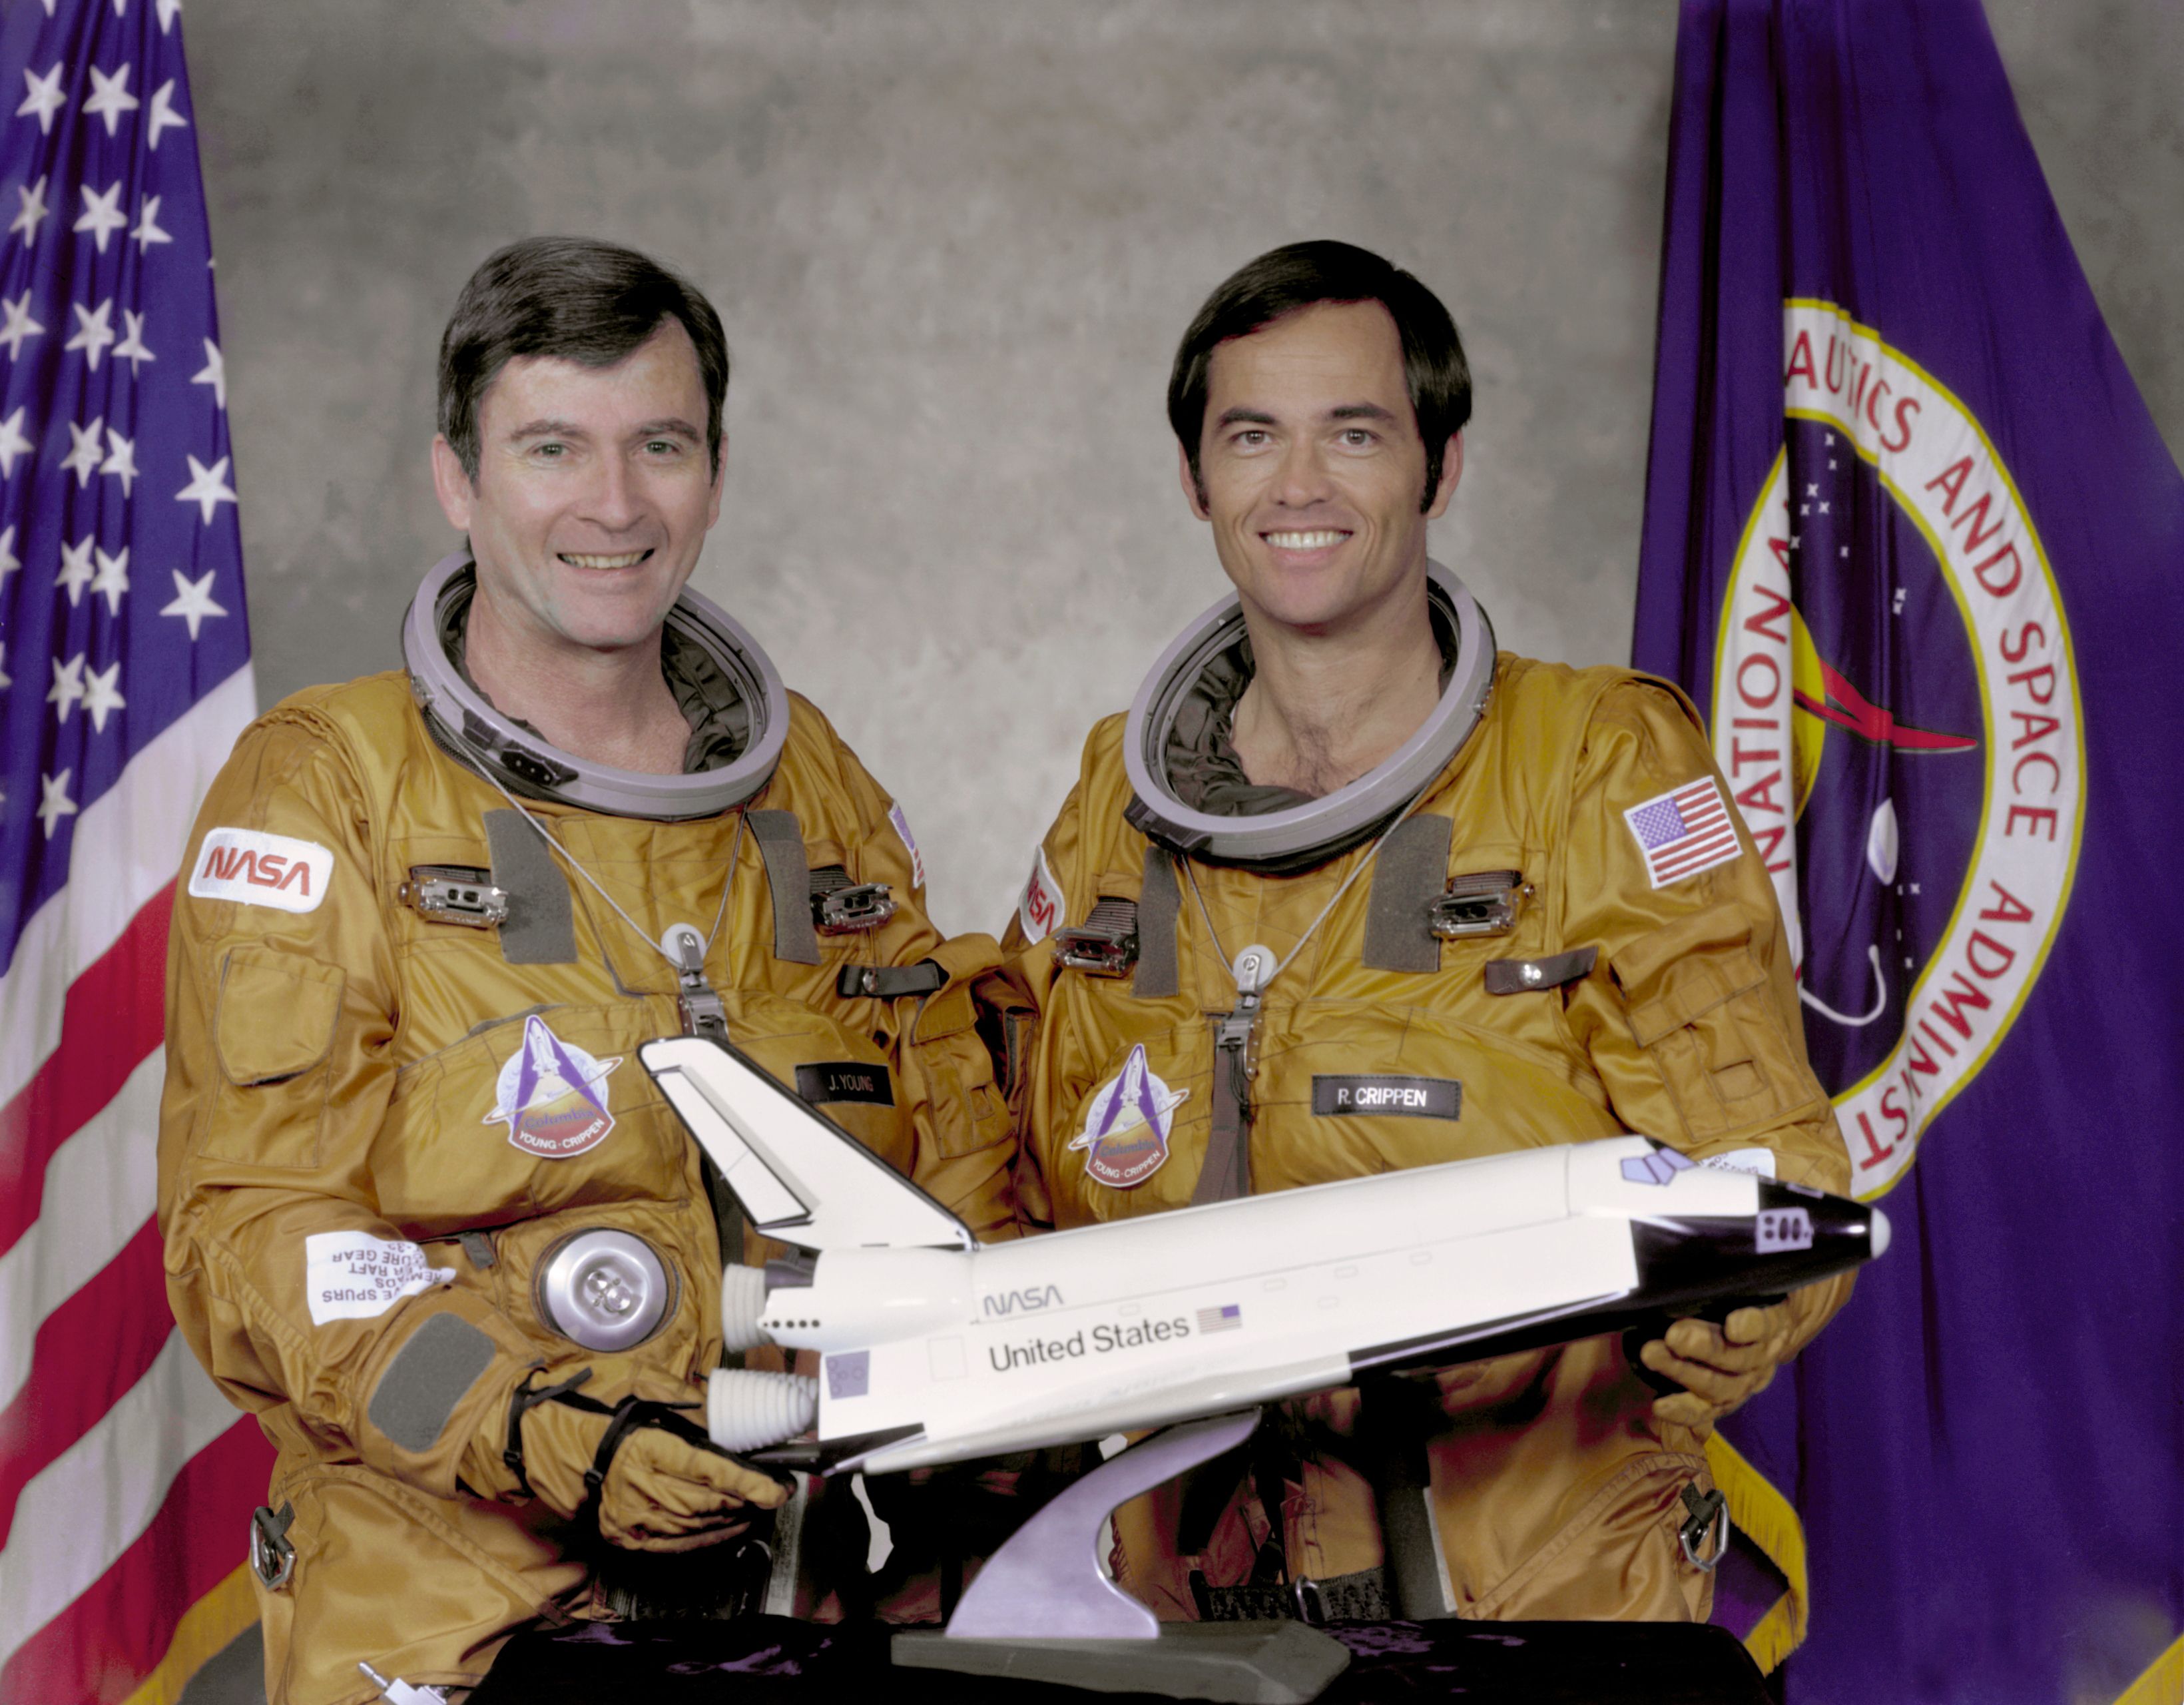 Астронавты NASA Джон Янг и Роберт Криппен &mdash; люди, которые первыми полетели в космос на шаттле | Источник: NASA.gov